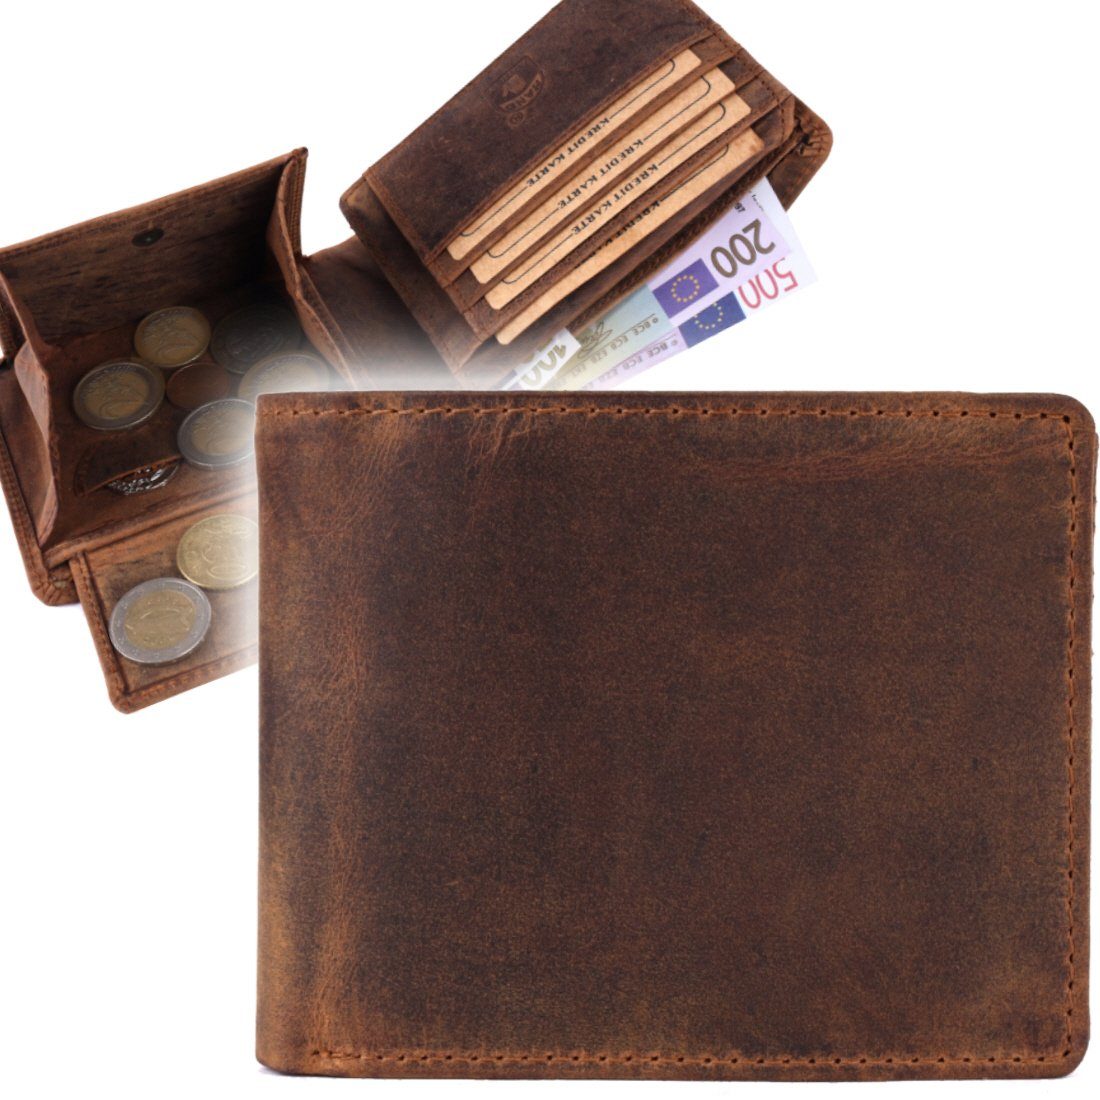 Portemonnaie, Börse mit Männerbörse Herren Brieftasche Münzfach SHG Geldbörse RFID Büffelleder Leder Schutz Lederbörse